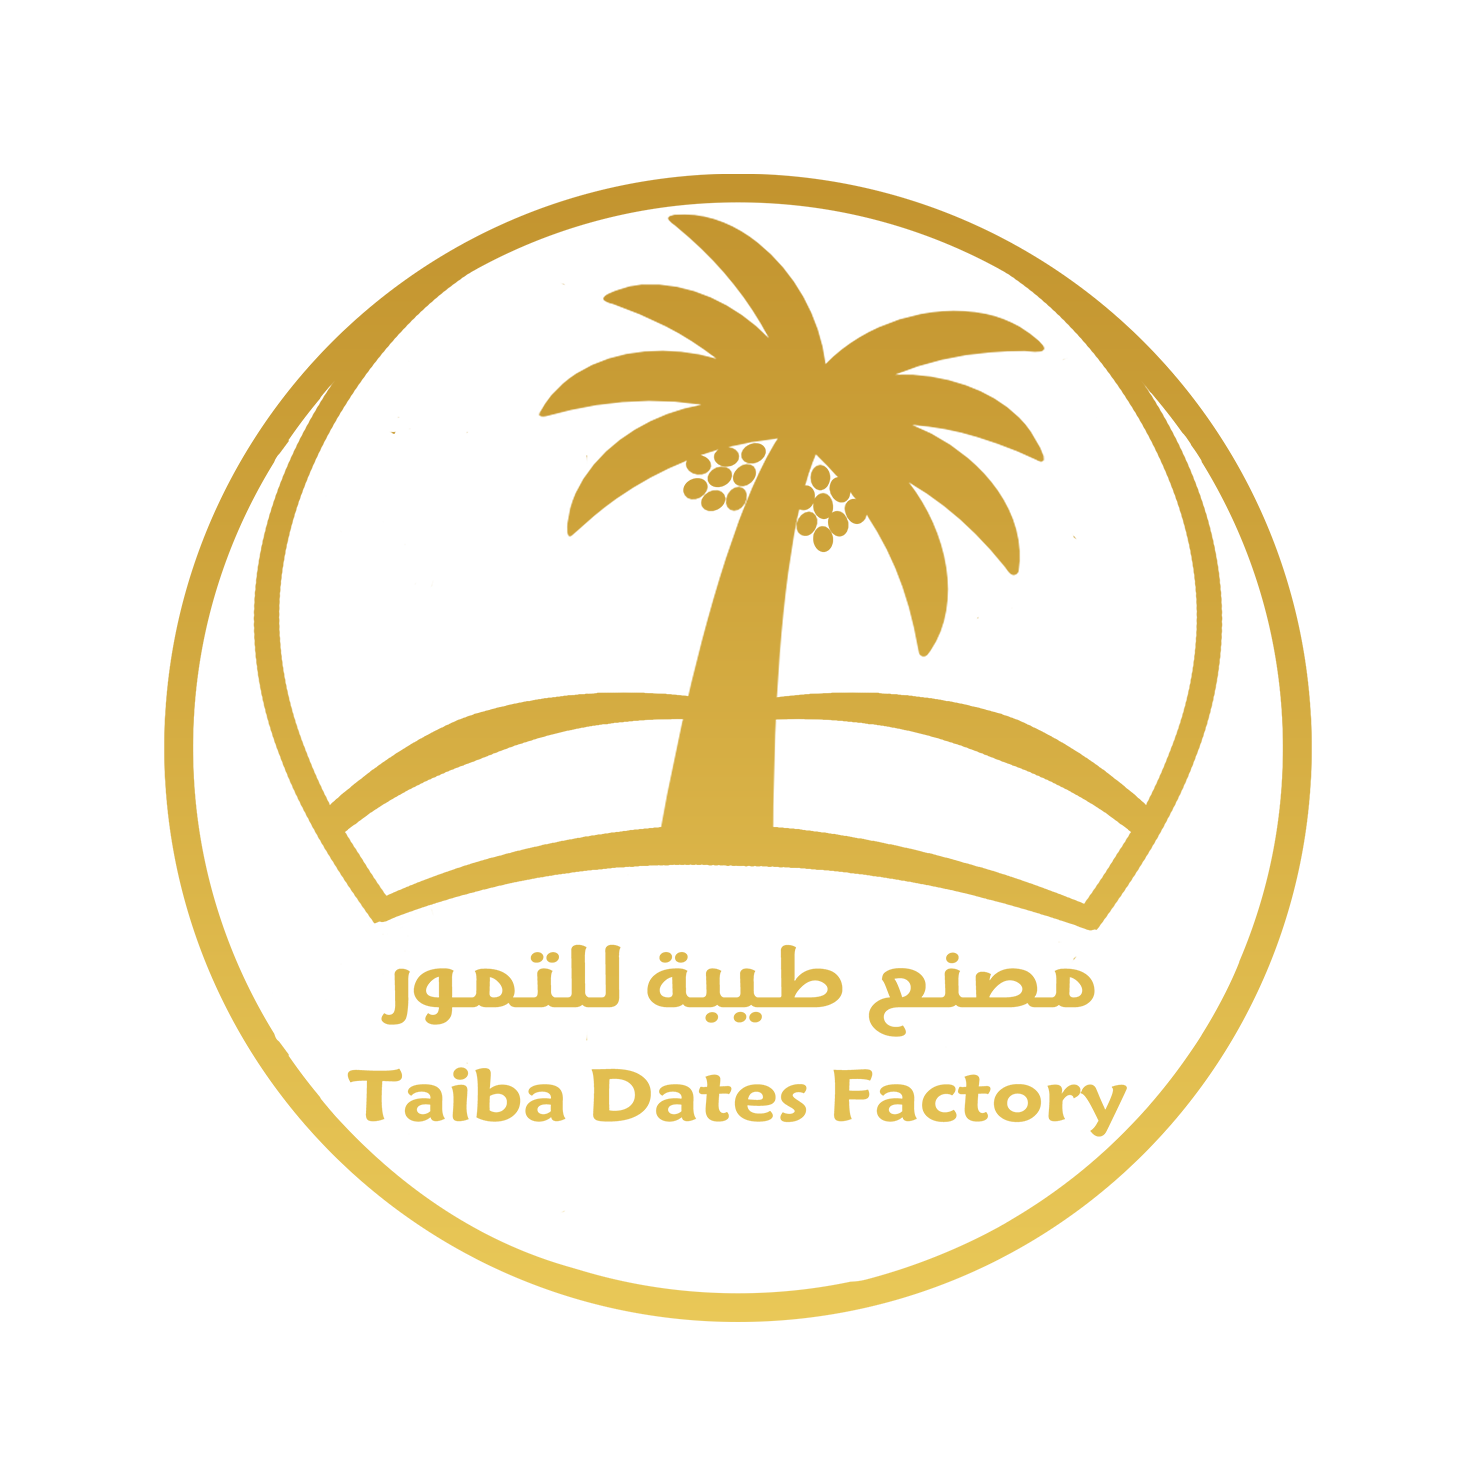 Taiba Dates Factory 